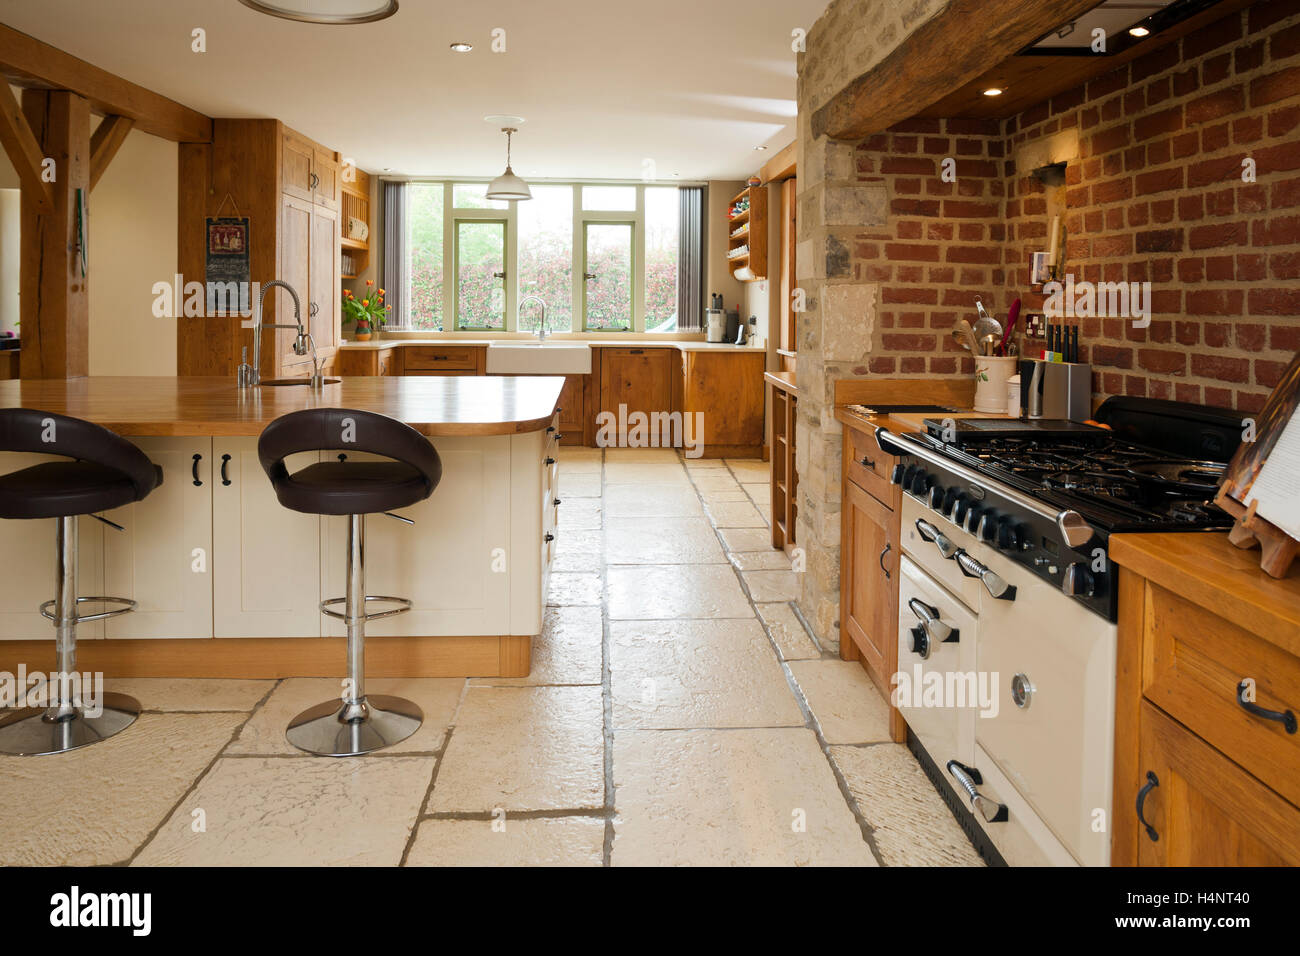 Ein Luxus gehobenen offenen Scheune Umbau Küche und Essbereich Raum Stockfoto